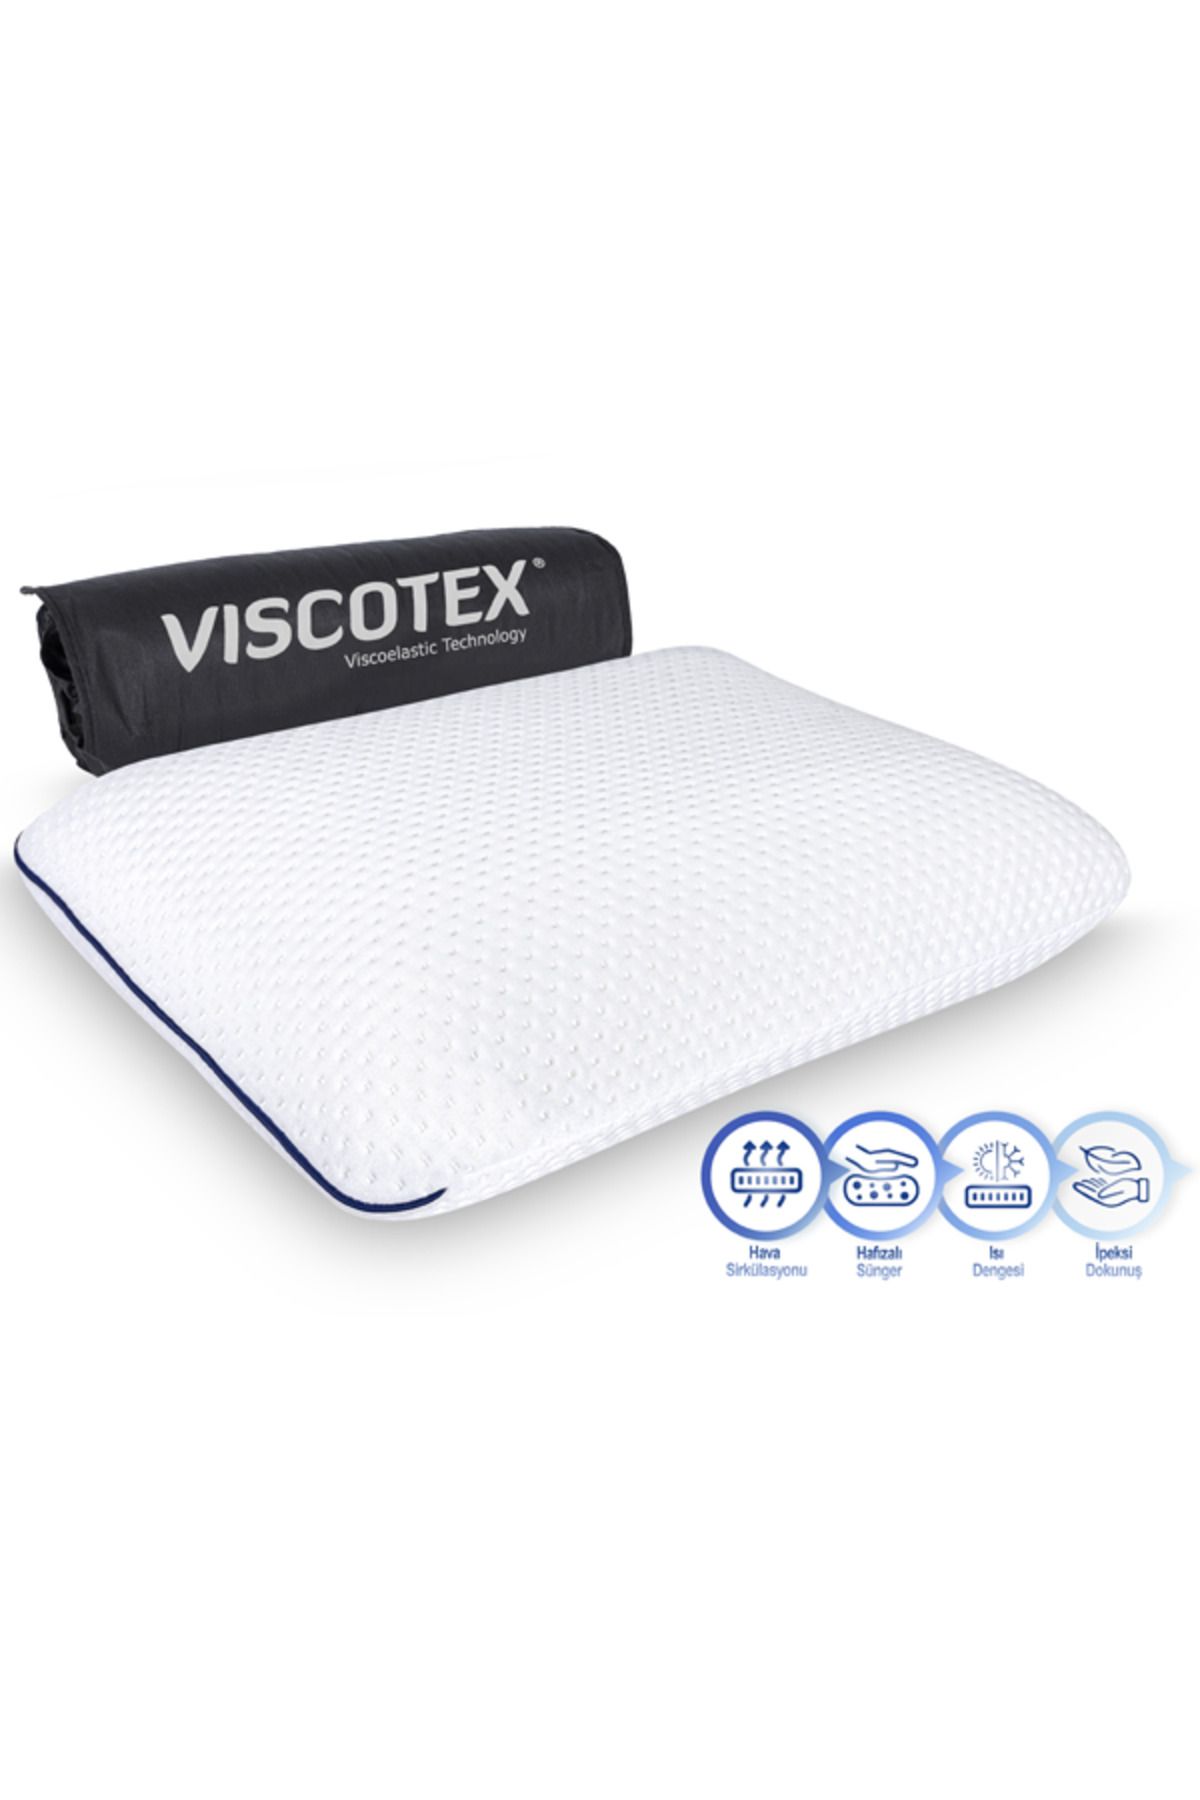 VİSCOTEX Visco Hava Kanallı Klasik Yastık (High), 60x40x16cm. Beyaz-Lacivert